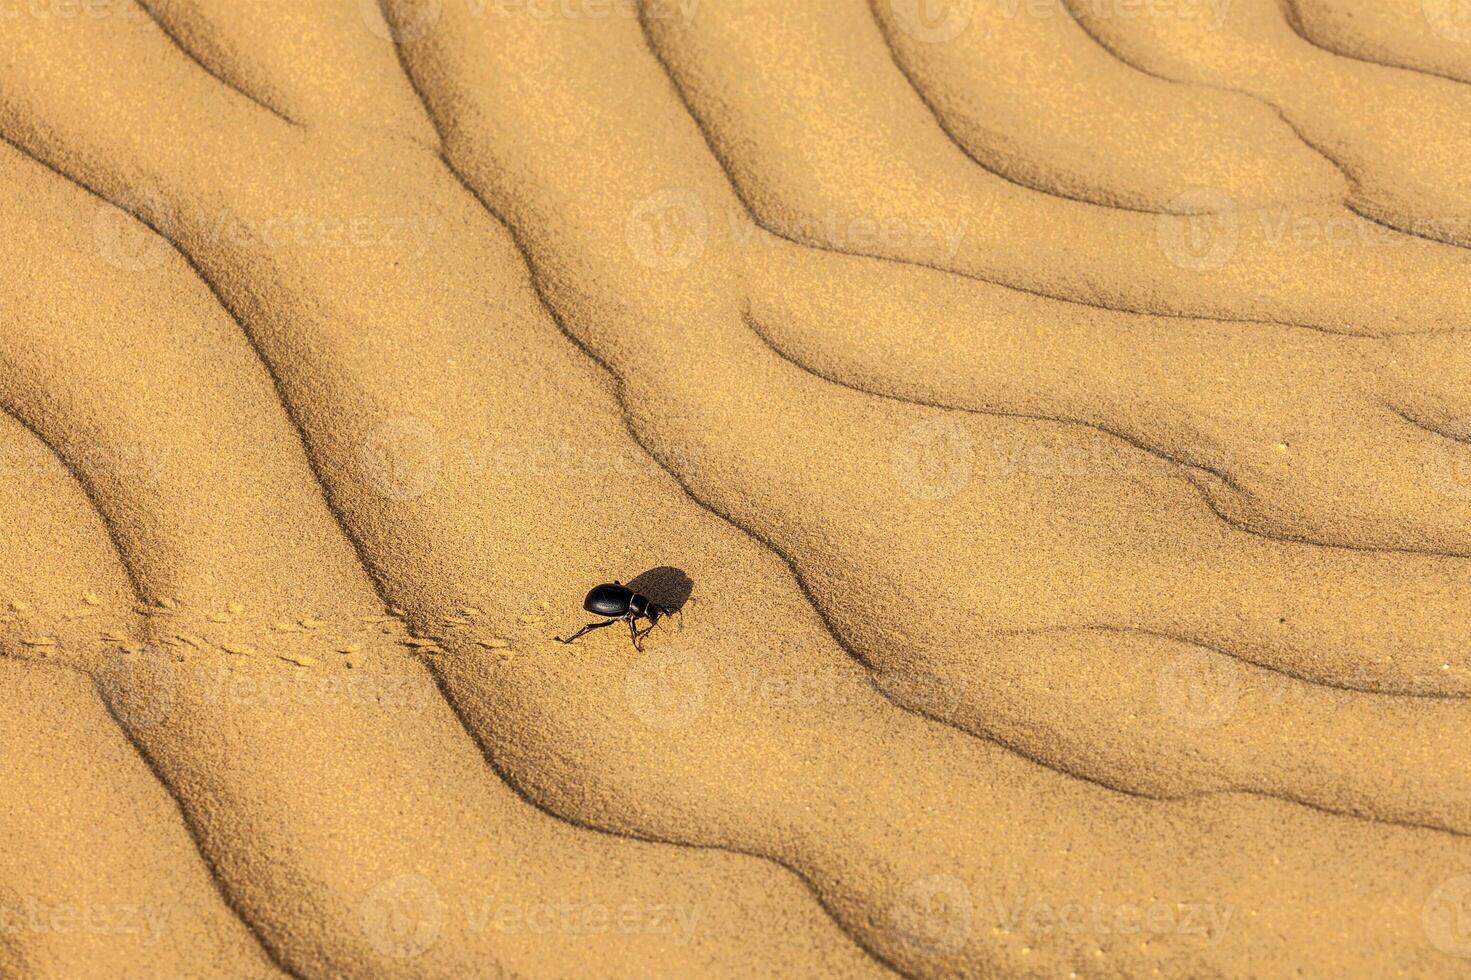 escaravelho Scarabaeus besouro em deserto areia foto